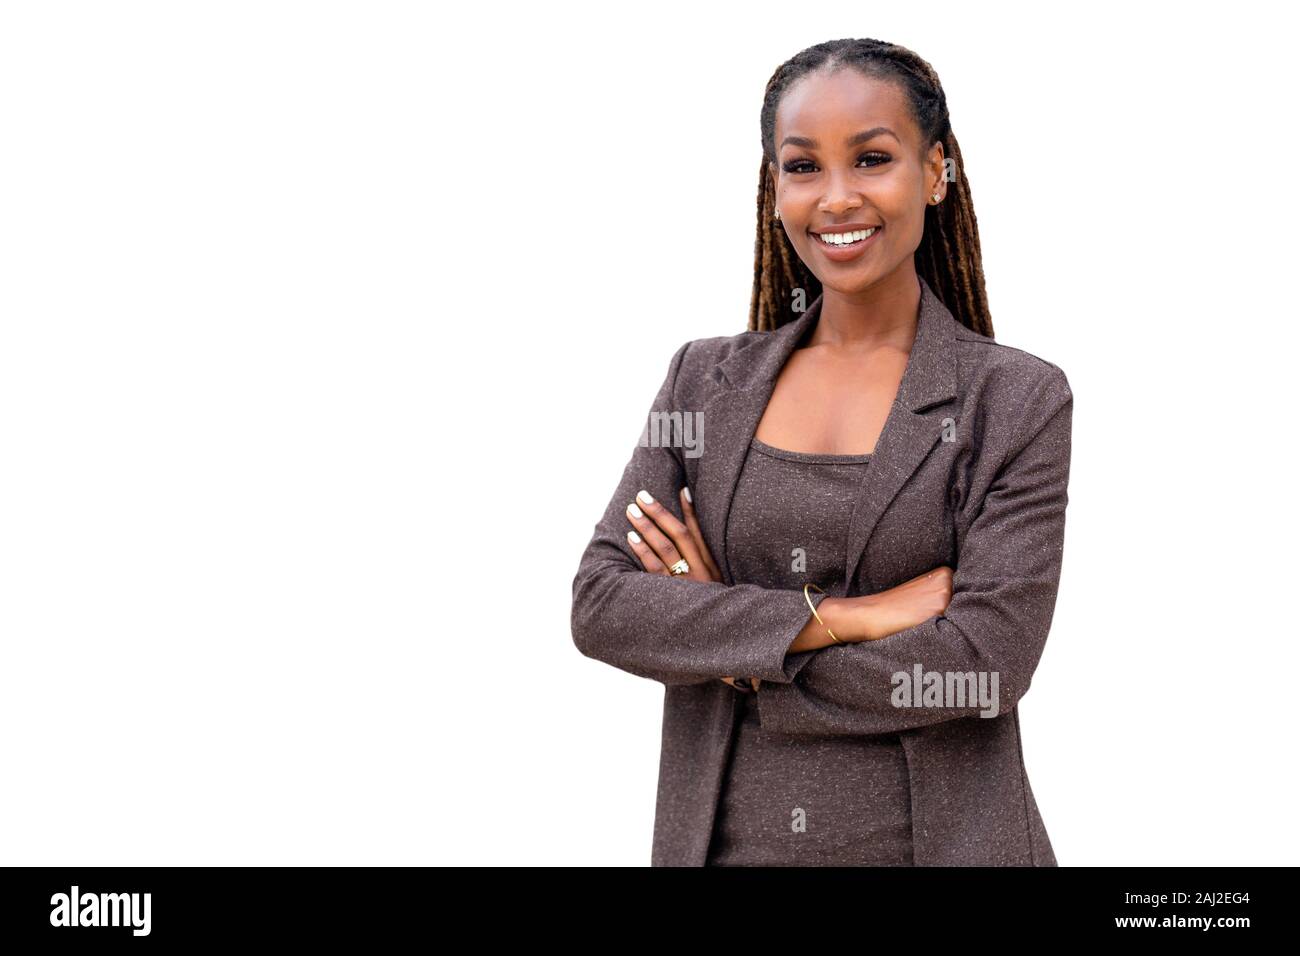 Ritratto di un felice americano africano compagnia femminile leader, CEO, boss, executive, isolati su sfondo bianco Foto Stock